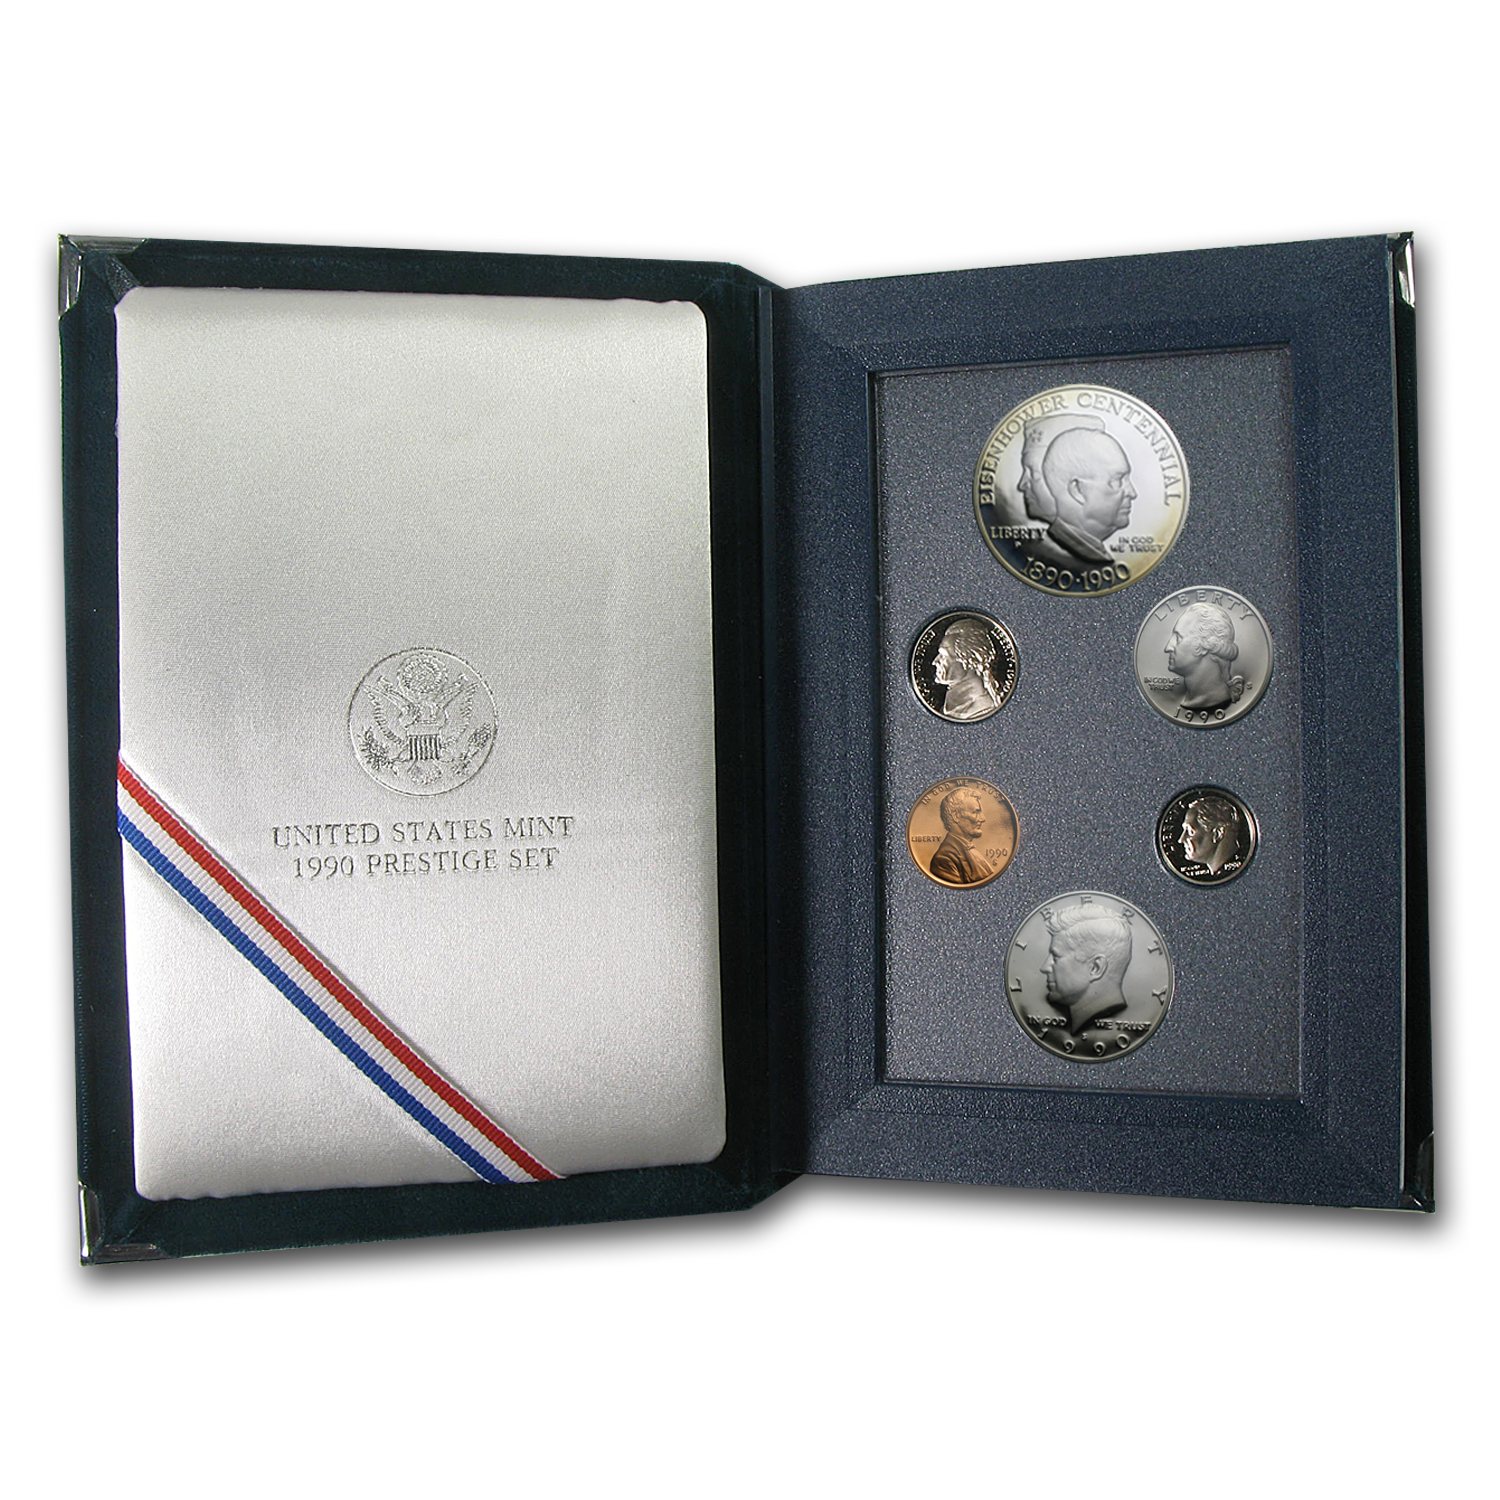 Buy 1990 U.S. Mint Prestige Set